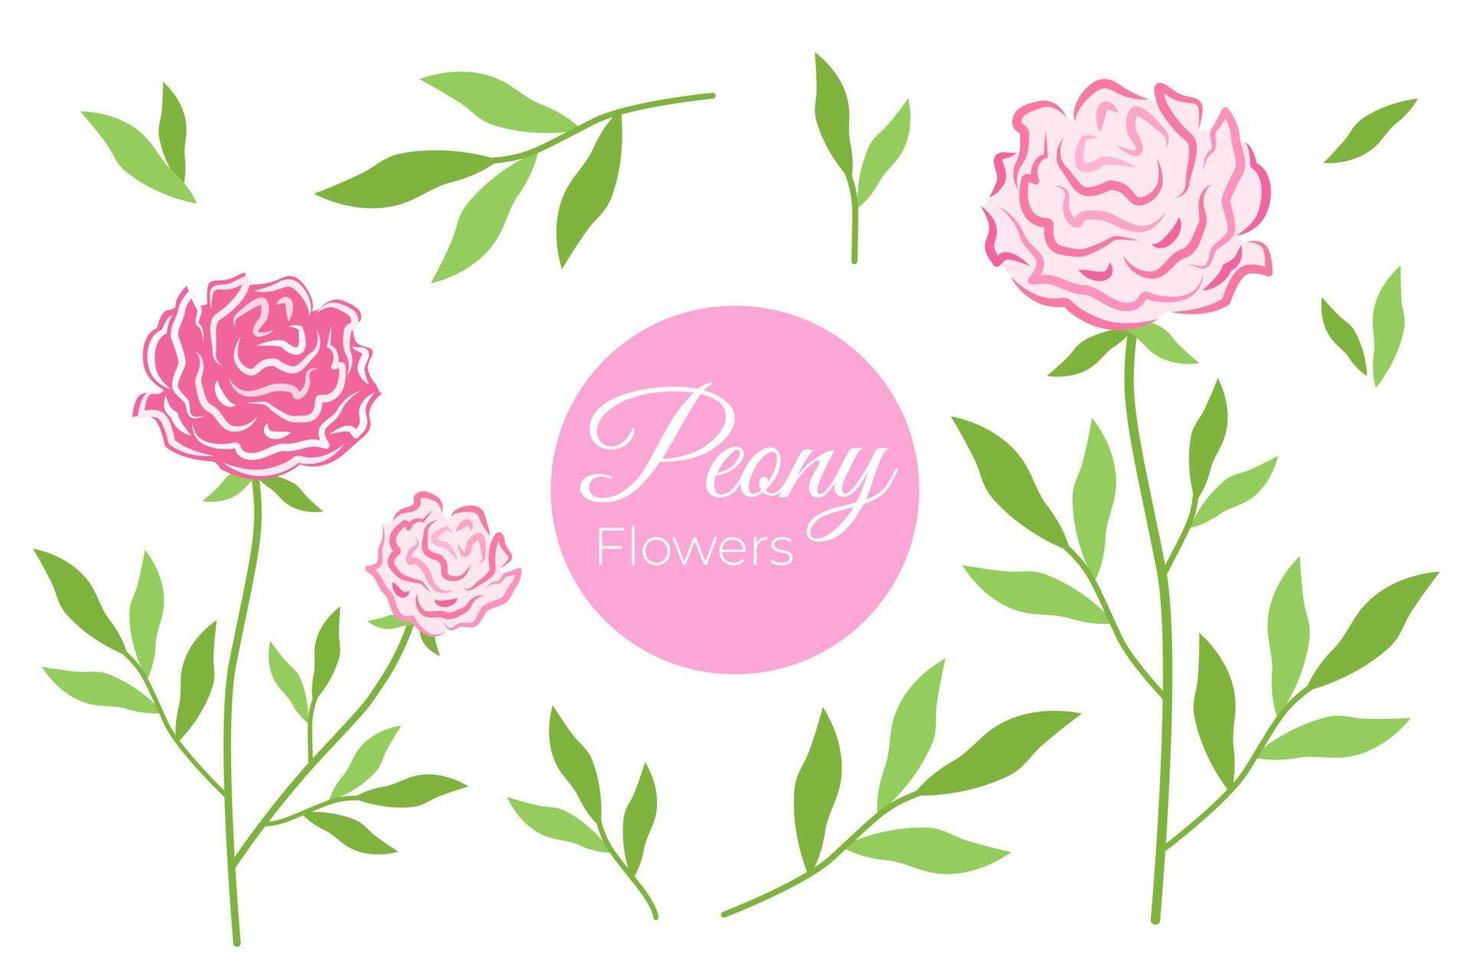 rosado floreciente peonía colocar. floral vector ilustración de Rosa en rama con verde hojas y inflorescencia. botánico dibujo de lozano flor brote.